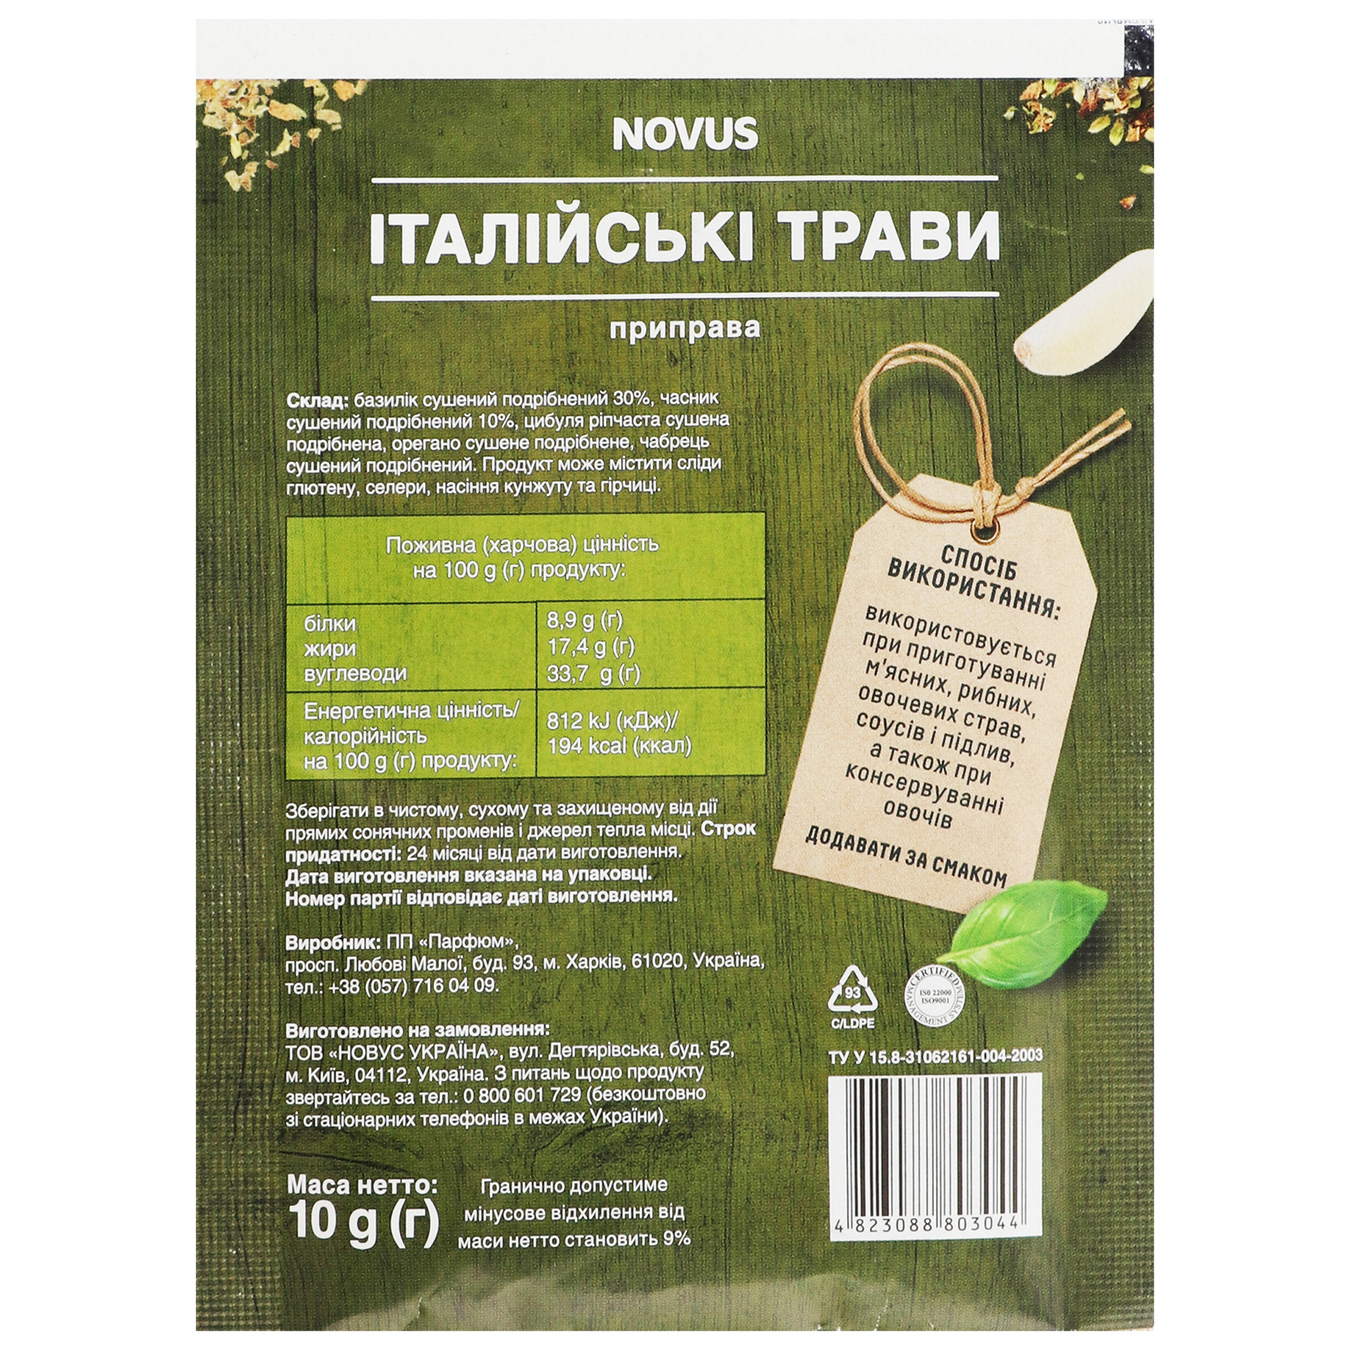 Novus Italian Herbs Spice 10g 2